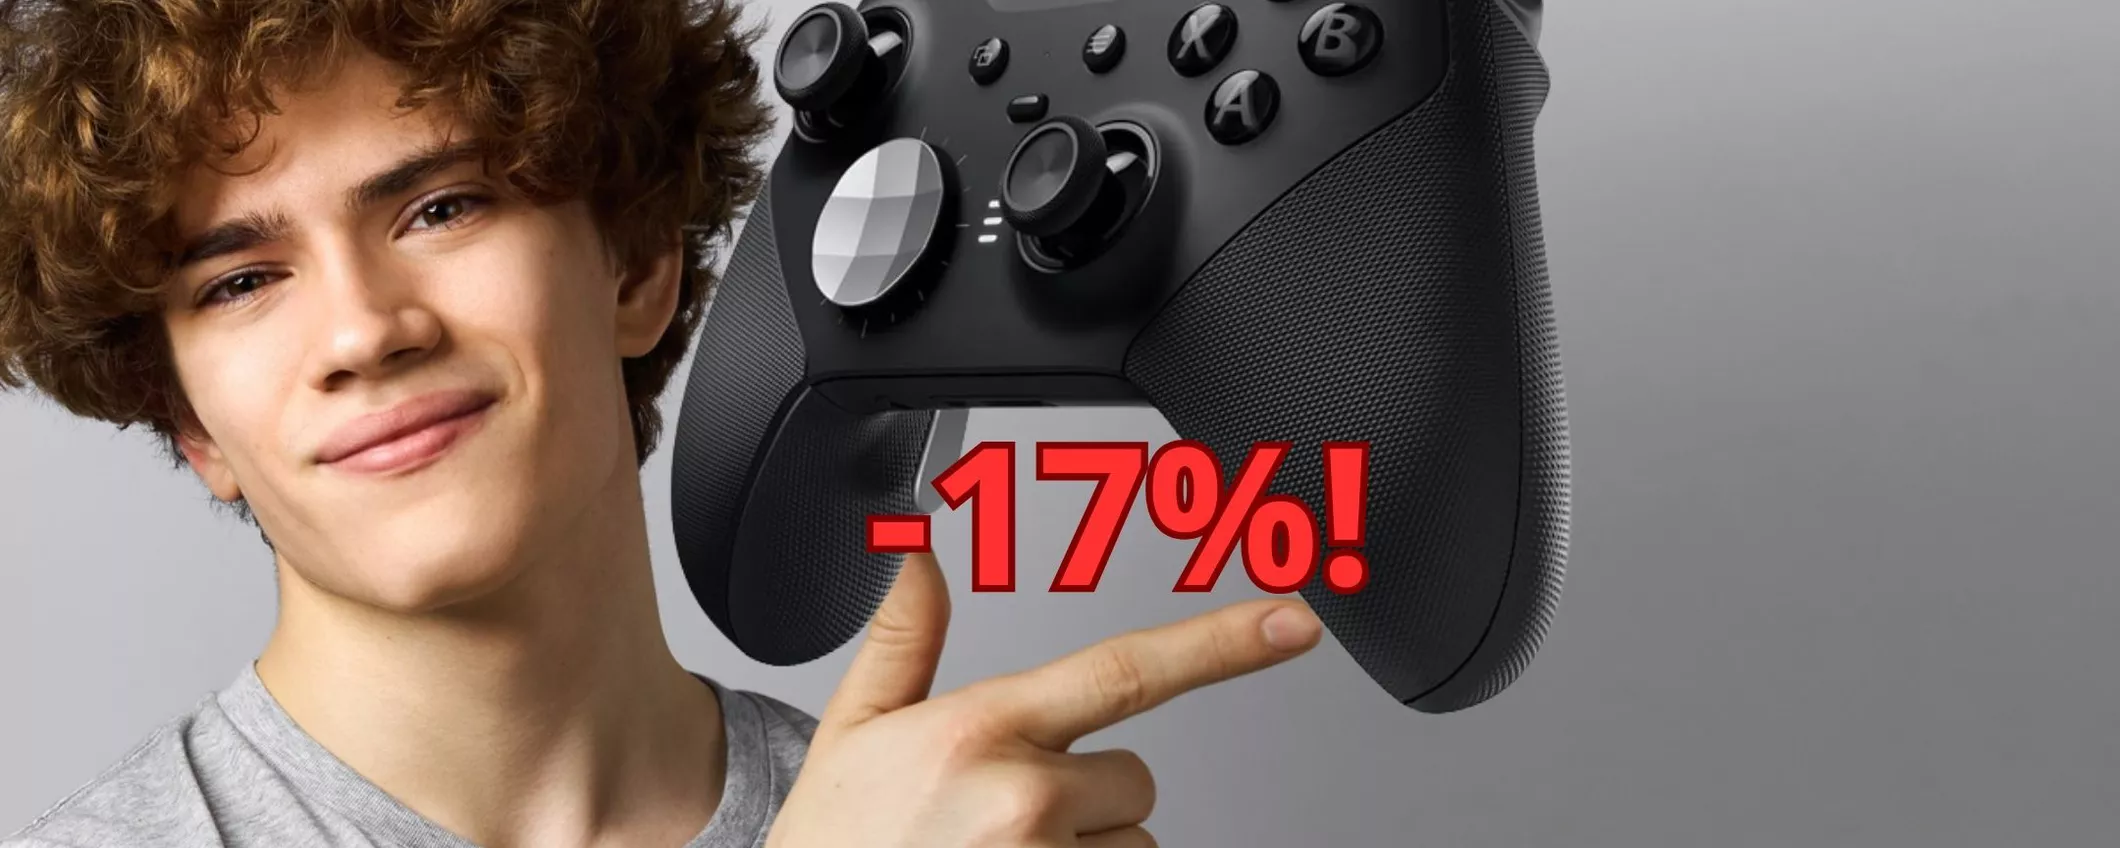 Controller per Xbox, Pc e Android in OFFERTA: a questo prezzo non lo trovi più!